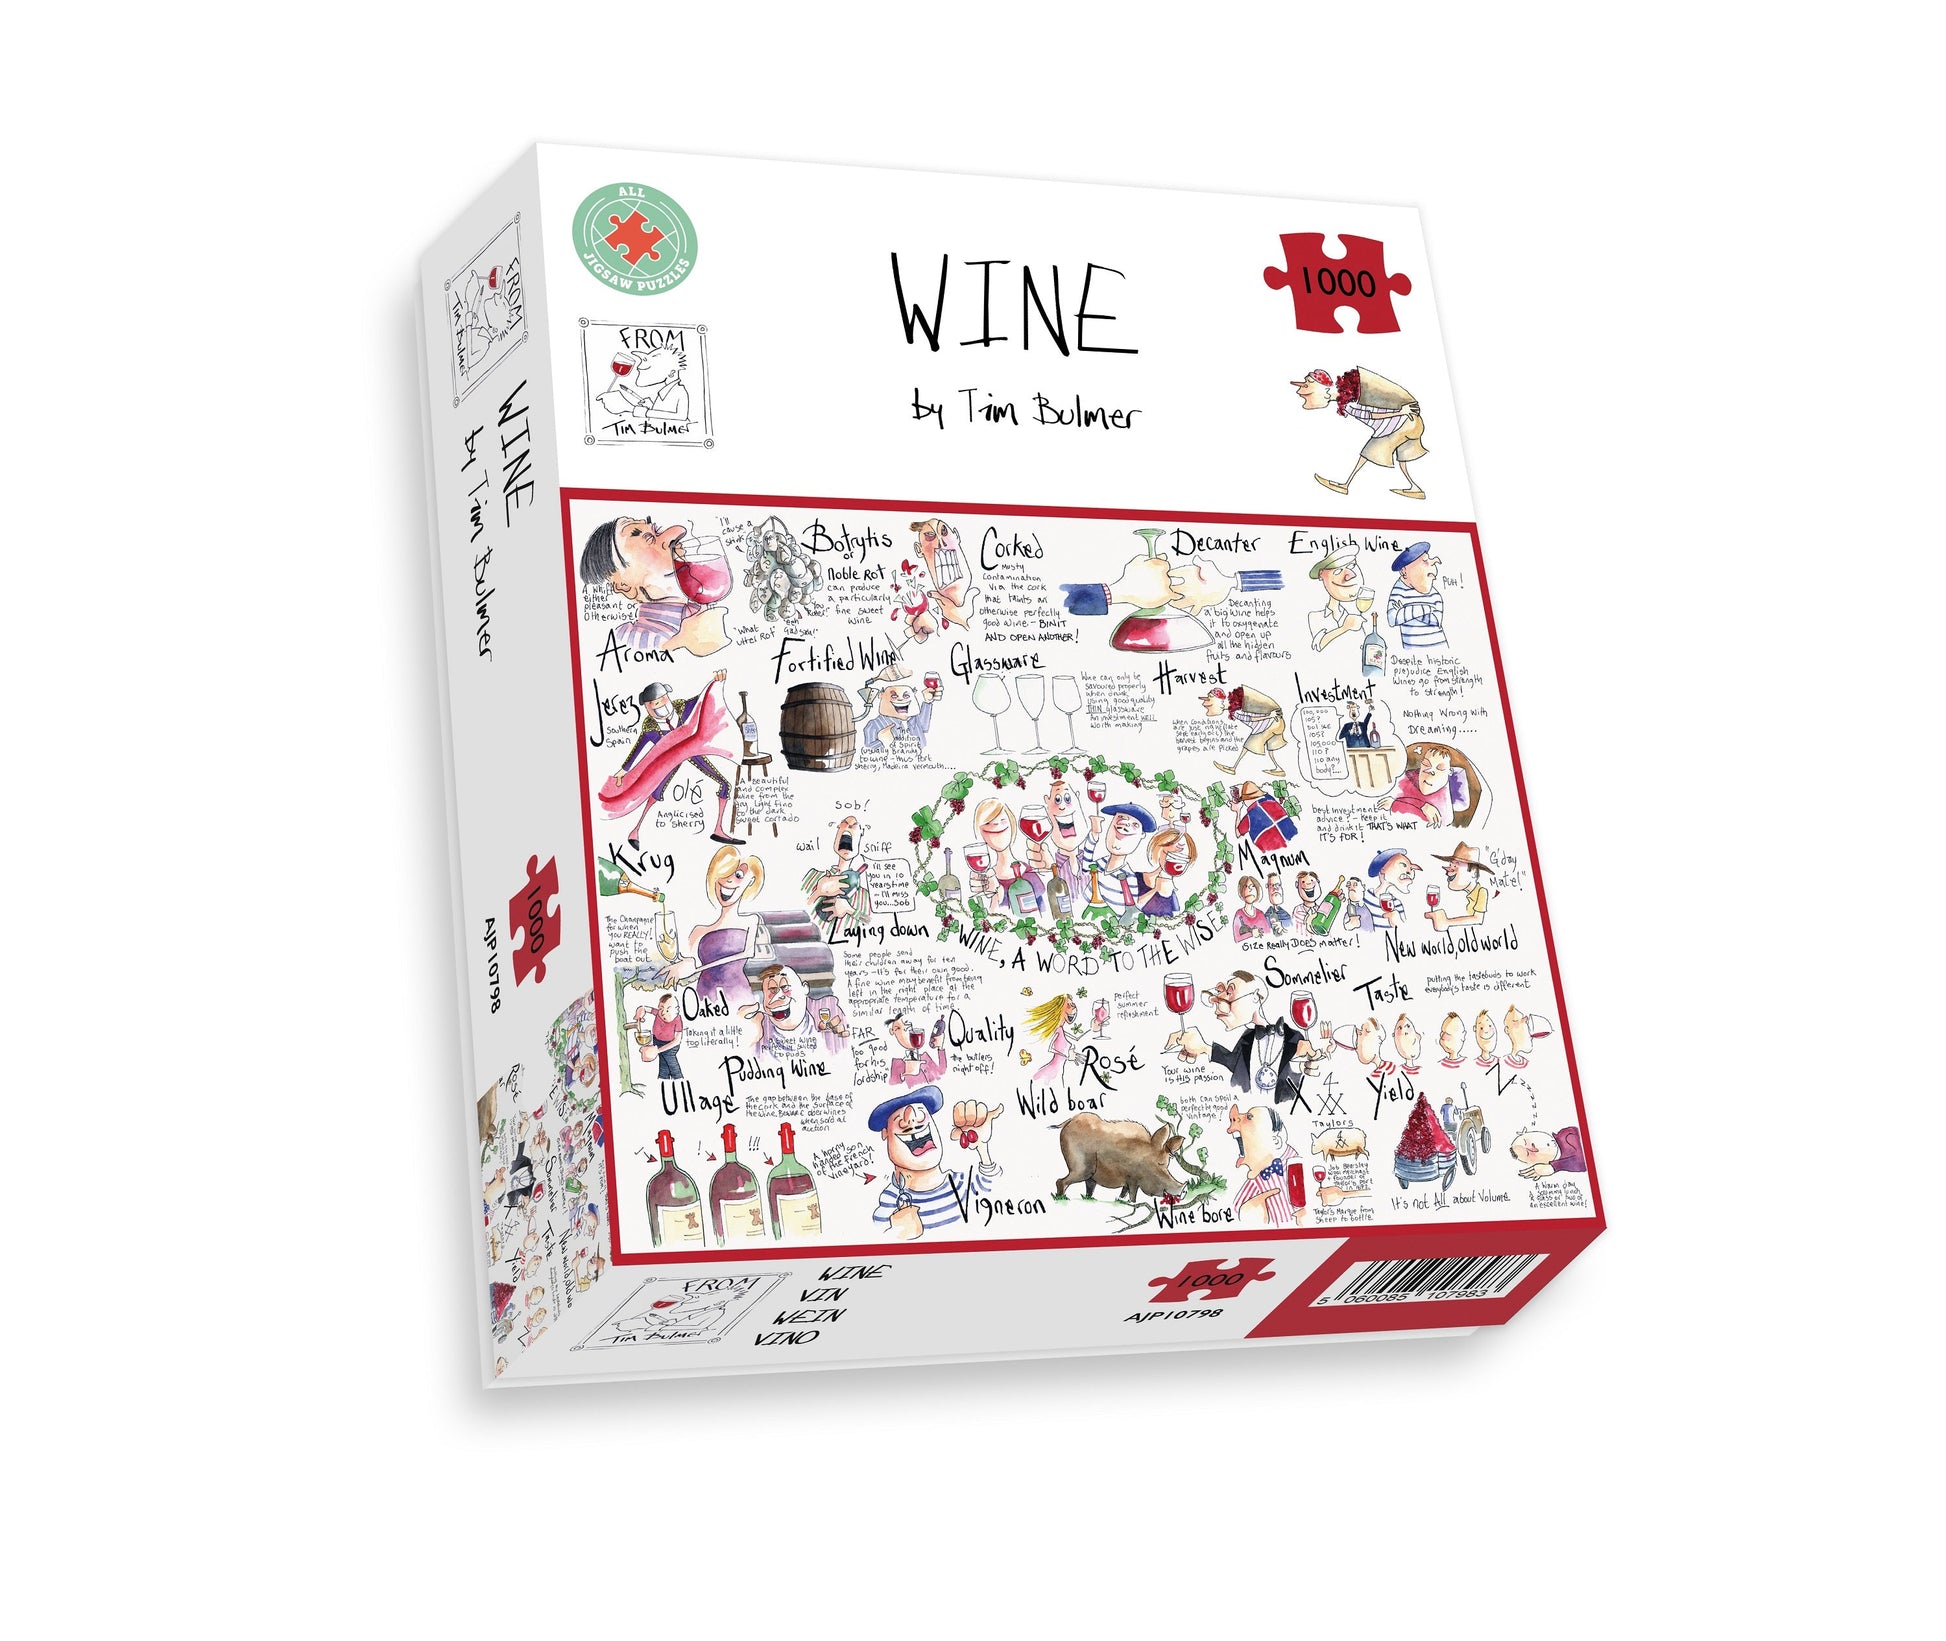 Wine - Tim Bulmer 1000 Piece Jigsaw Puzzle box